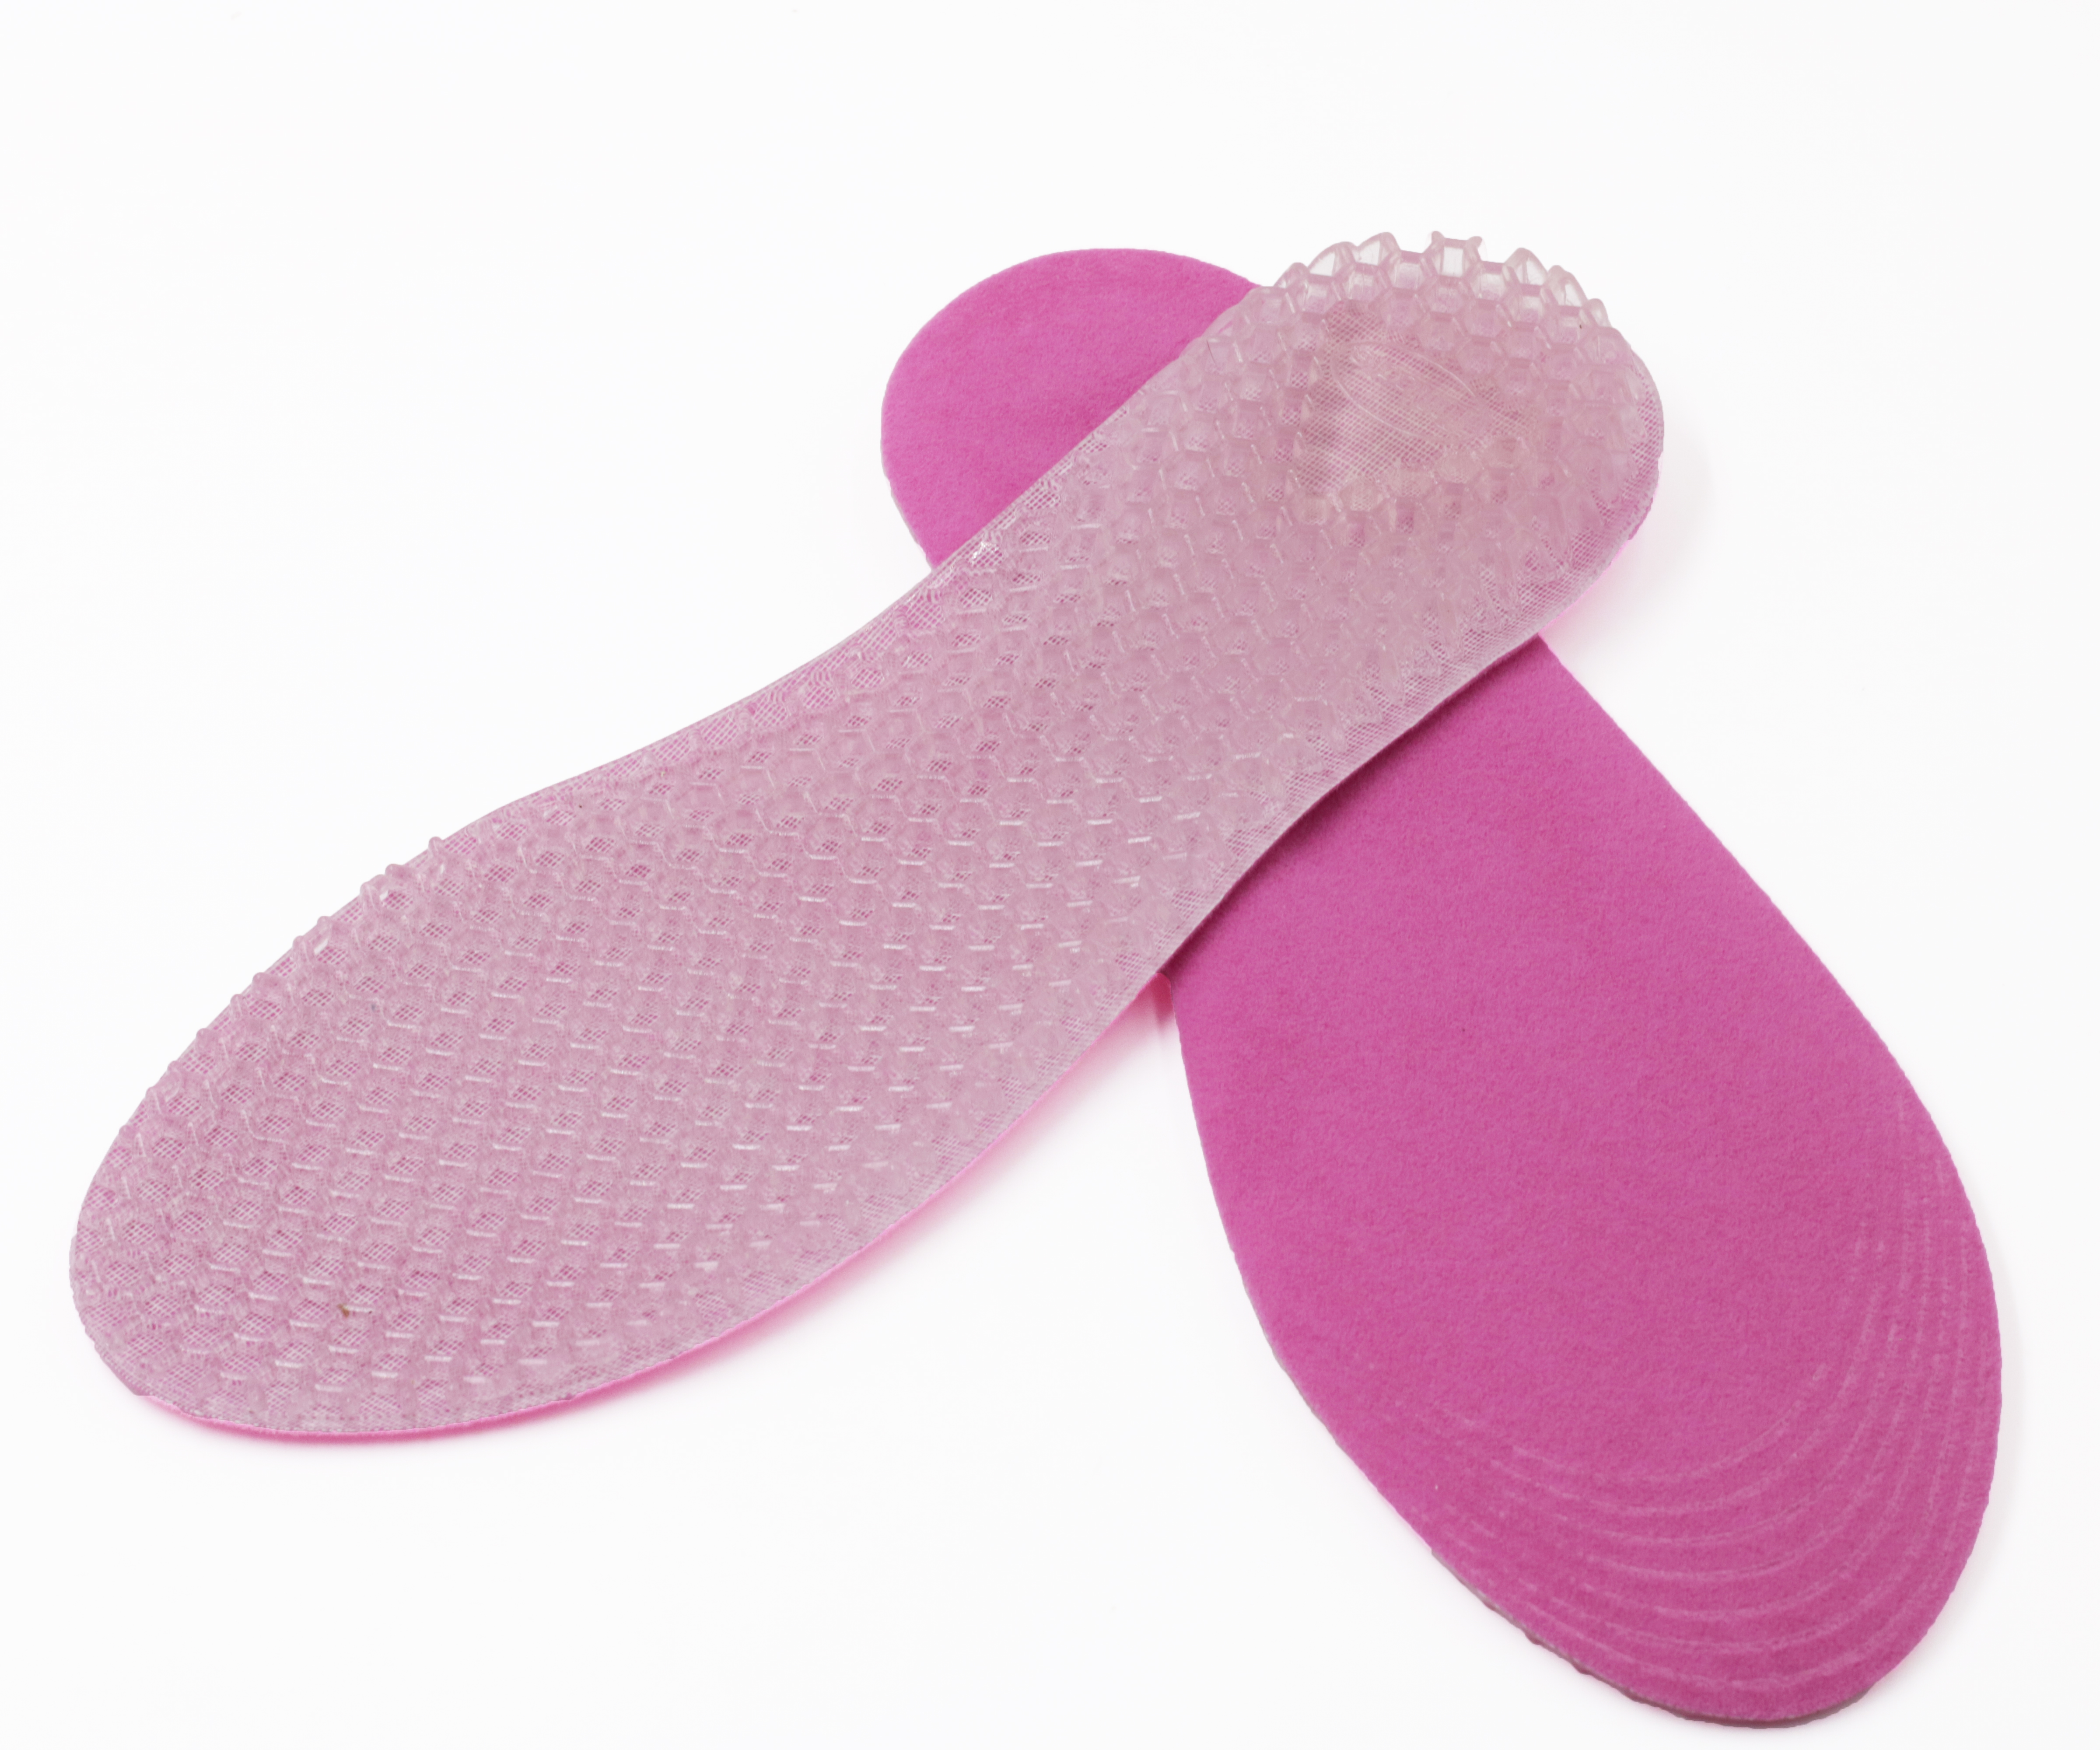 FM-301 Plantillas de gel de diseño de panal deportivo para masaje de pies ajustables y cortables para aliviar el dolor de pies 